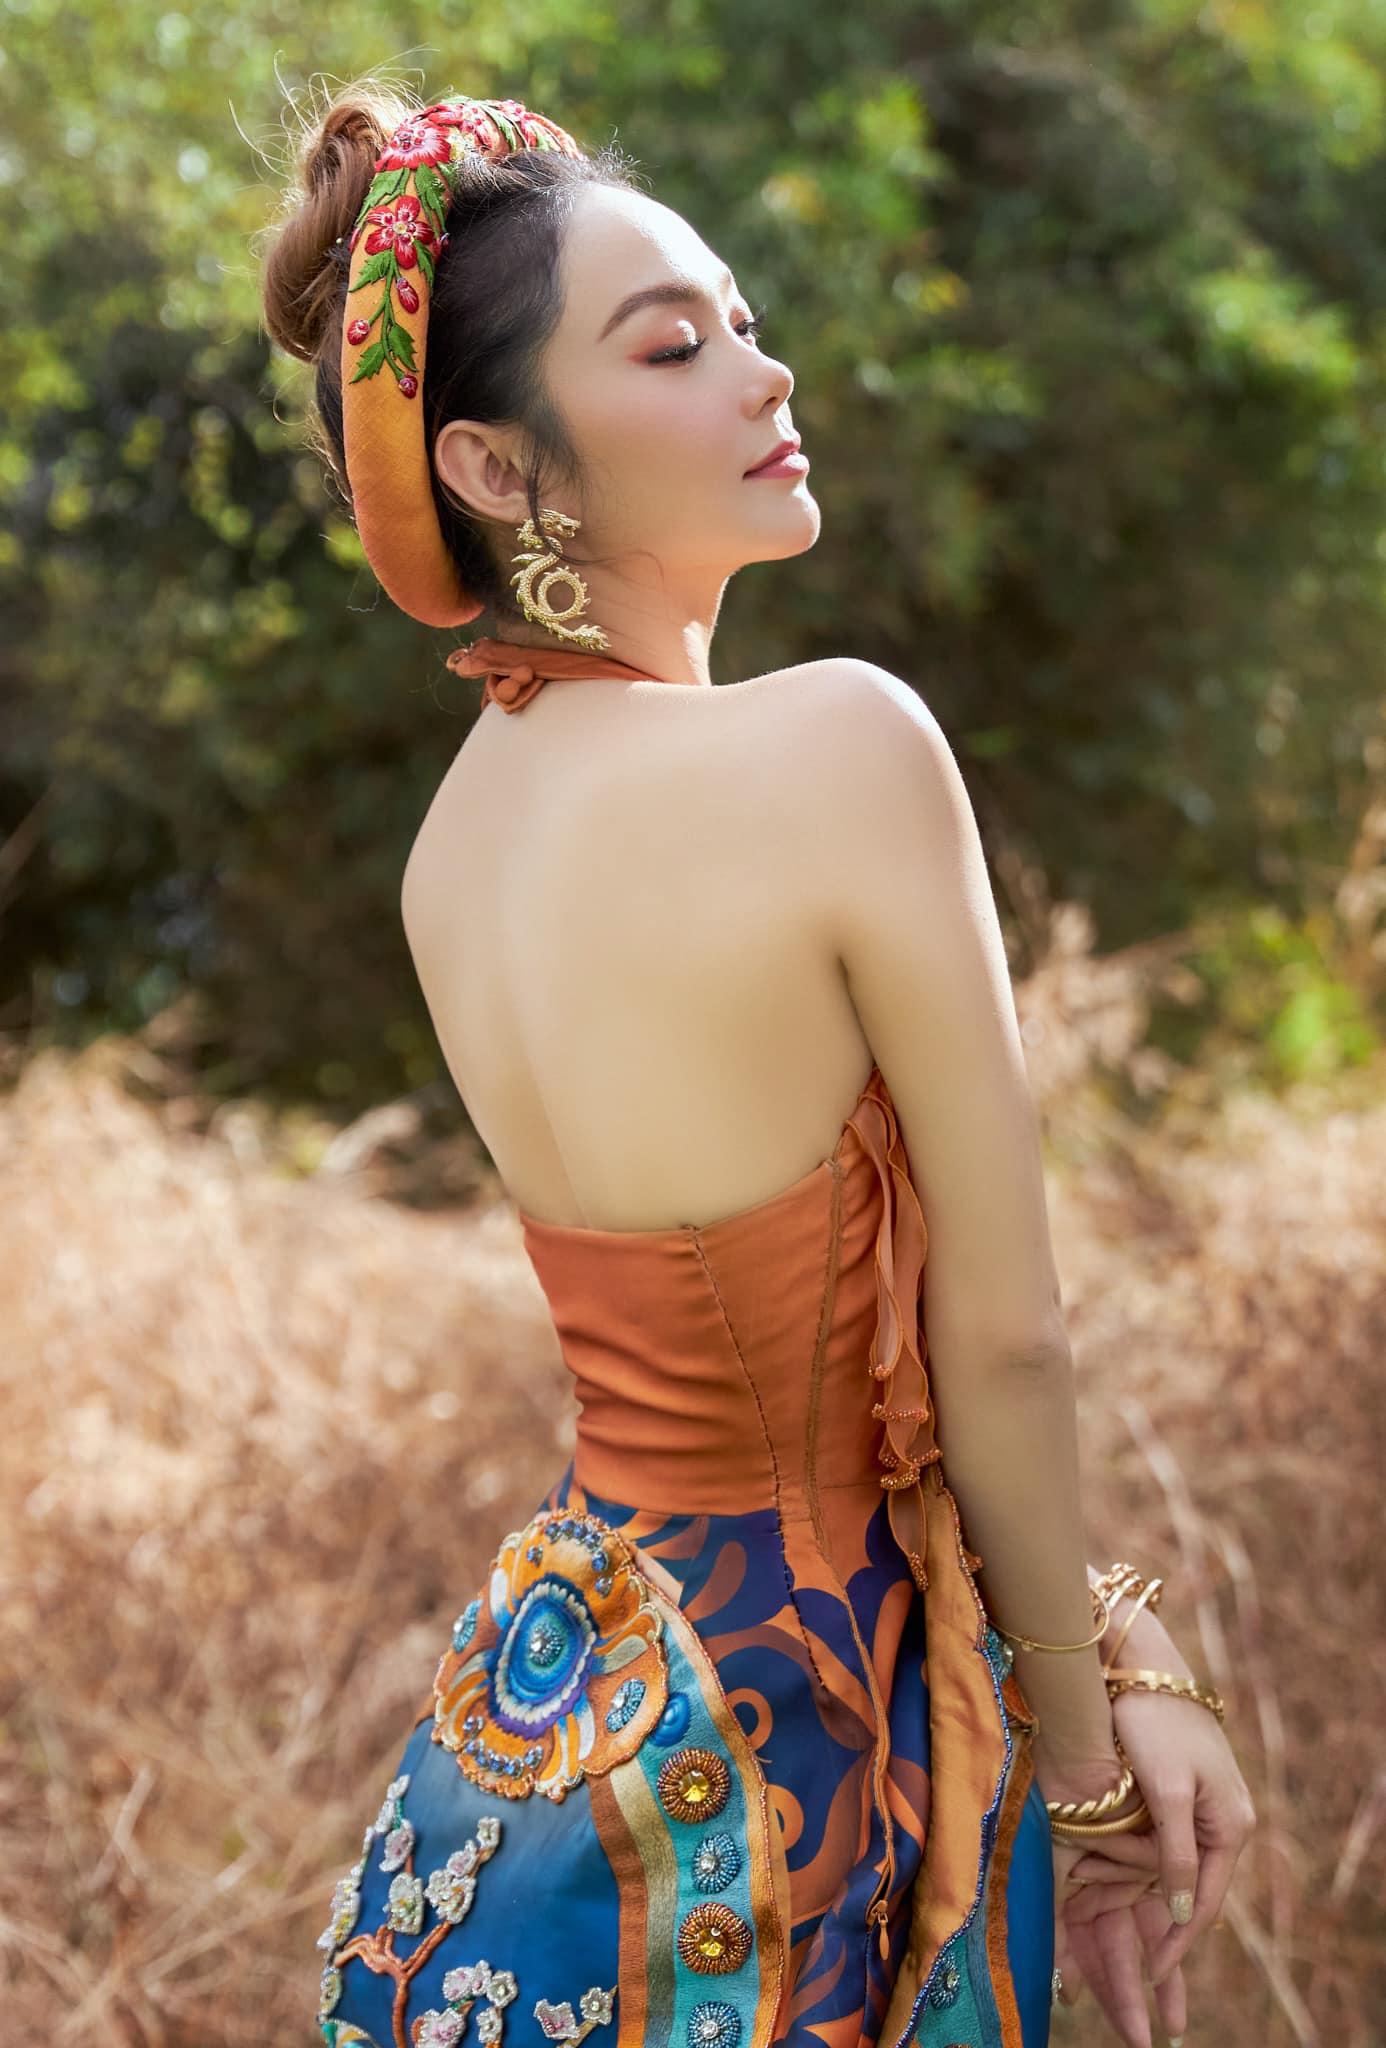 Trong set áo yếm + váy của NTK Thủy Nguyễn, cô đầy ắp vẻ nữ tính trong vẻ e ấp truyền thống.